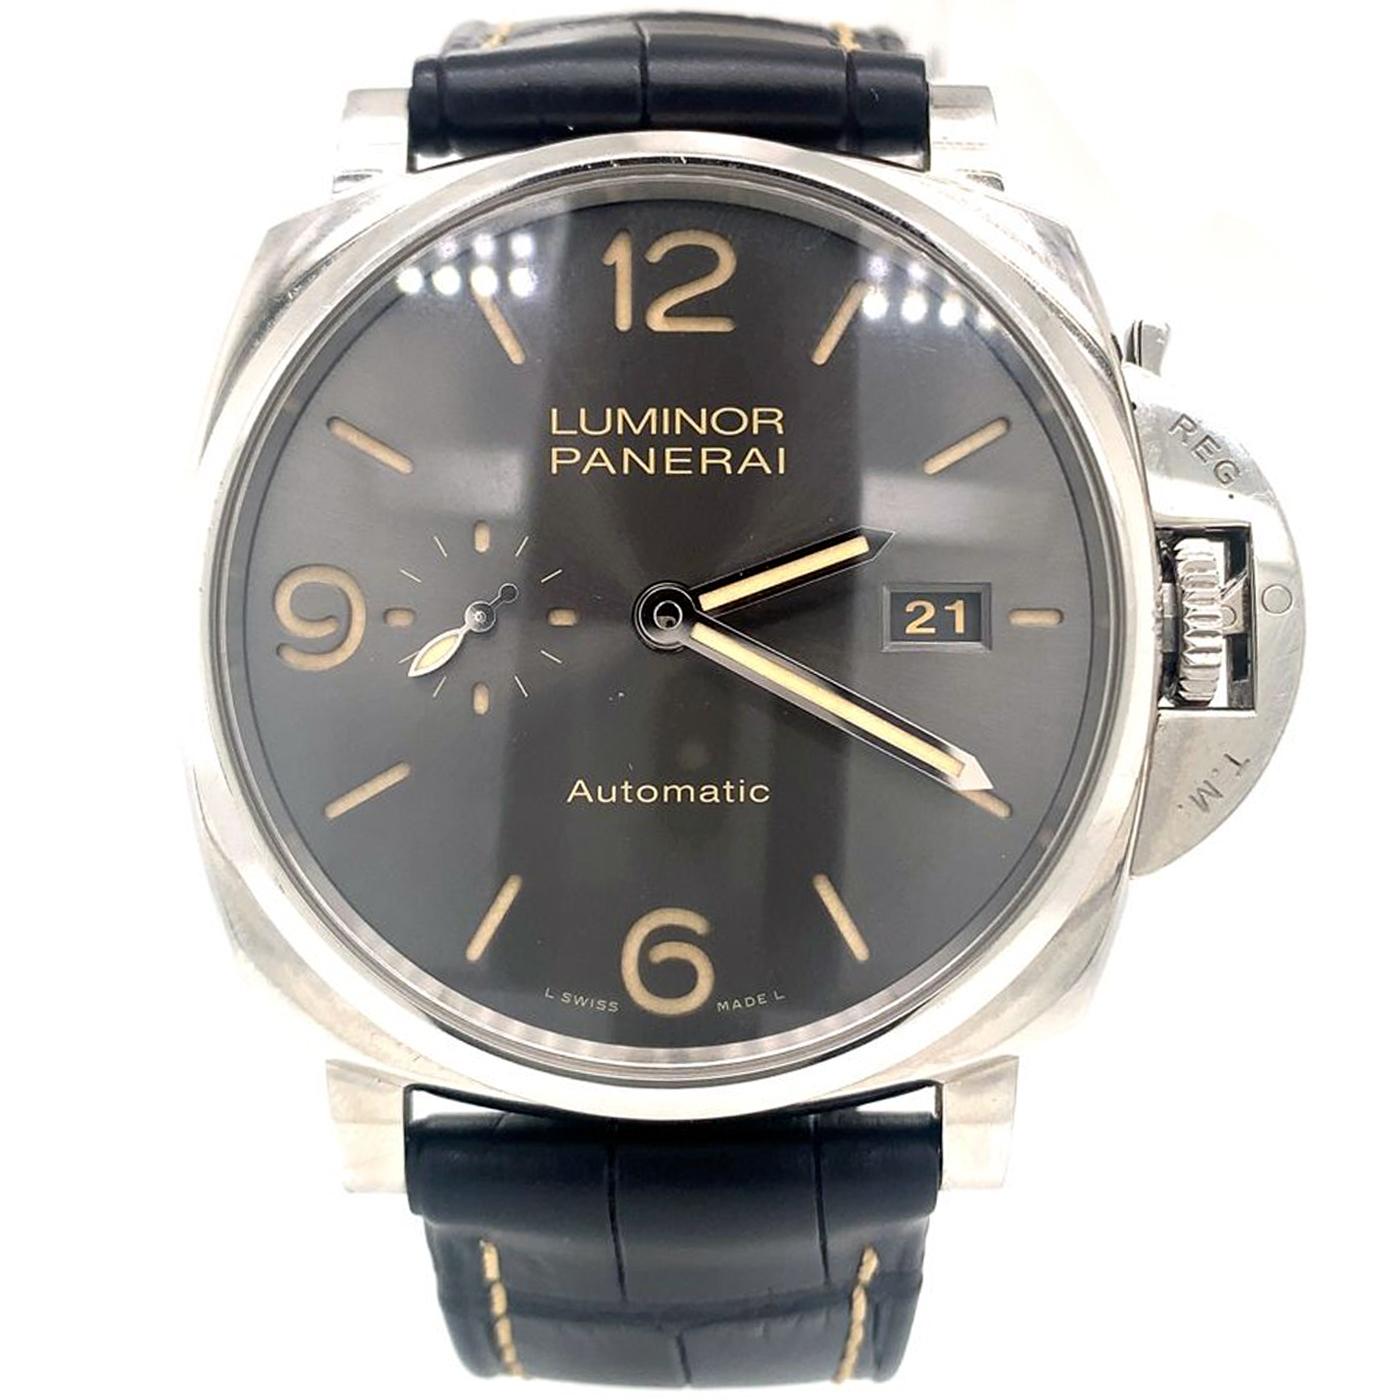 La montre Panerai Luminor Due PAM00943 est une montre automatique logée dans un boîtier en acier poli de 45 mm avec une lunette en acier assortie montée sur le dessus. Il renferme un cadran anthracite brossé soleil. Protégé par un verre saphir, le